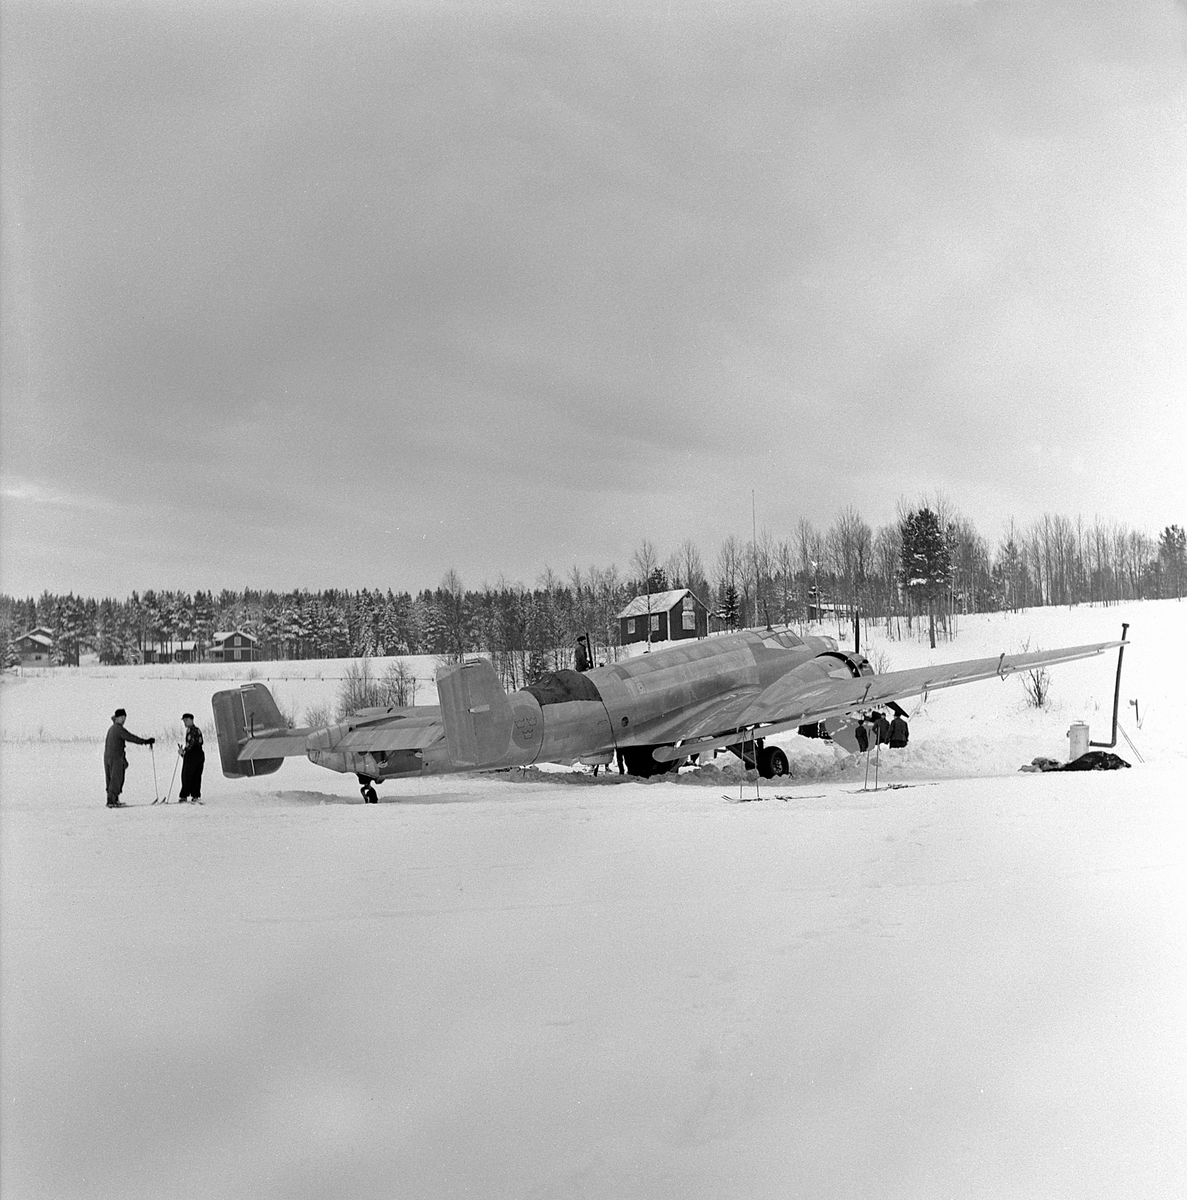 Flygplan B 3 nödlandad på Storsjöns is efter flygning i hårt väder i februari 1946. Skidåkare vid flygplanet. Vy snett bakifrån.